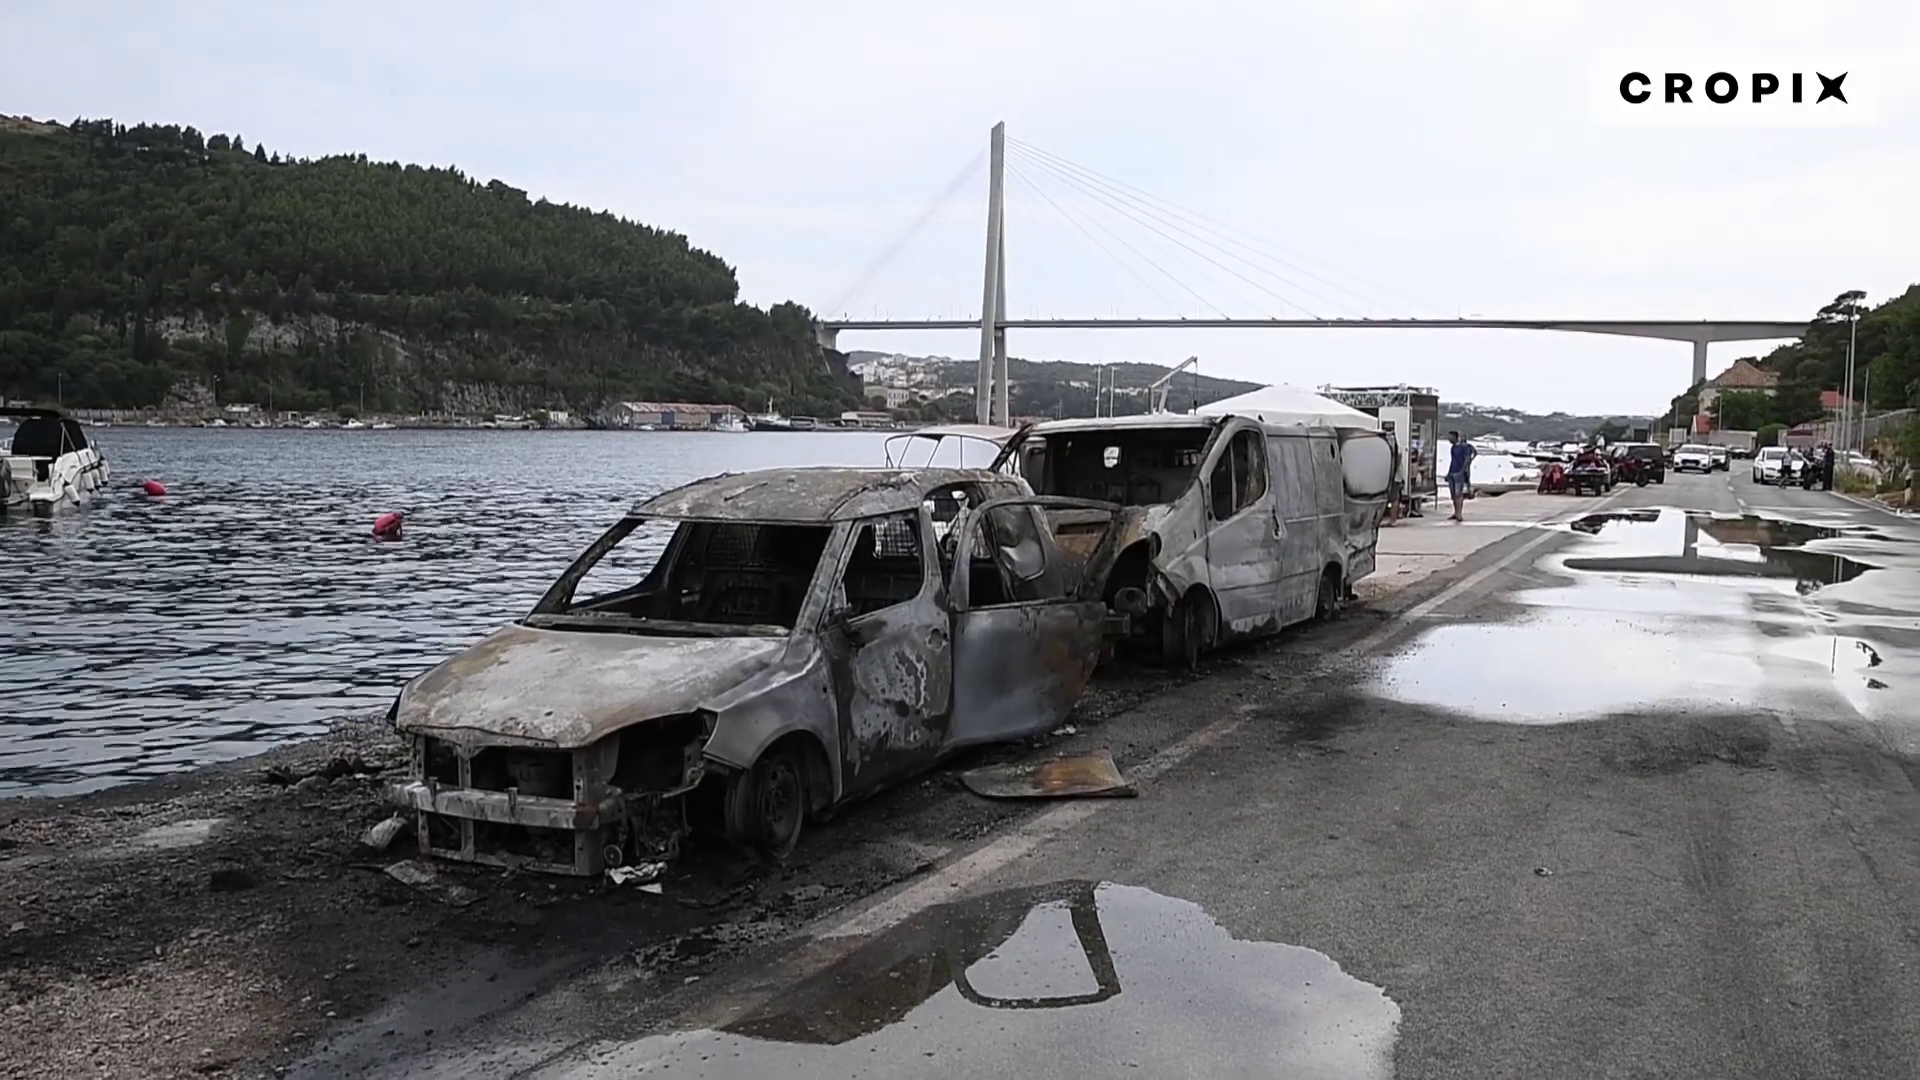 Egy kisbusz miatt lángolt a dubrovniki tengerpart